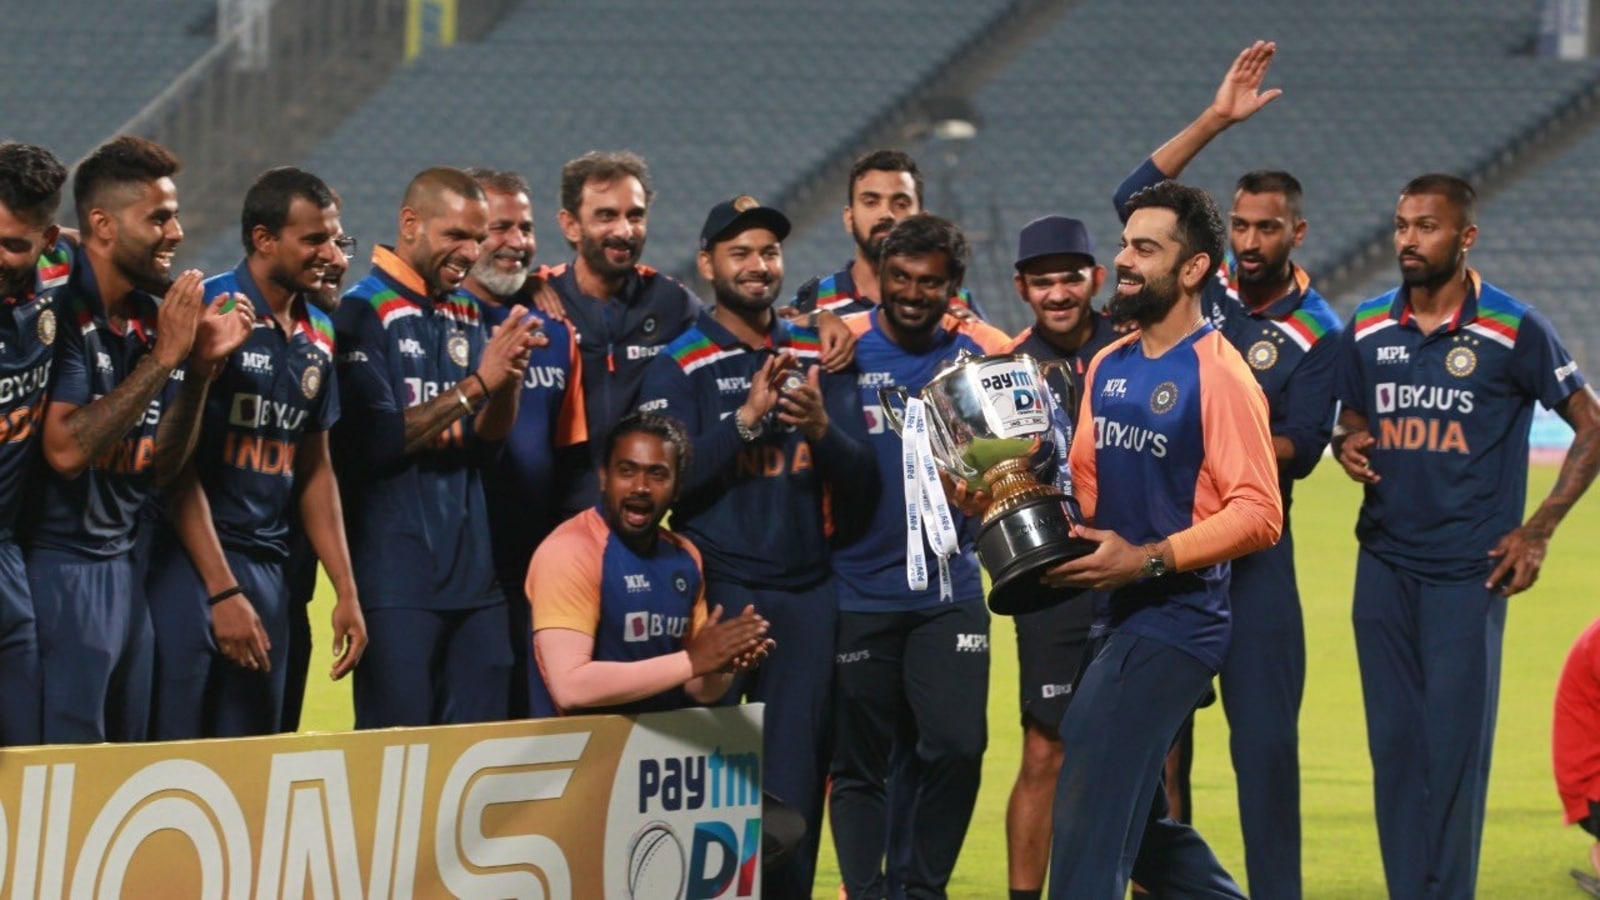 Hãy xem hình về Ravi Shastri và đội tuyển Ấn Độ để cảm nhận sự khát khao chiến thắng và tinh thần đồng đội mạnh mẽ của những vận động viên thể thao chuyên nghiệp này.